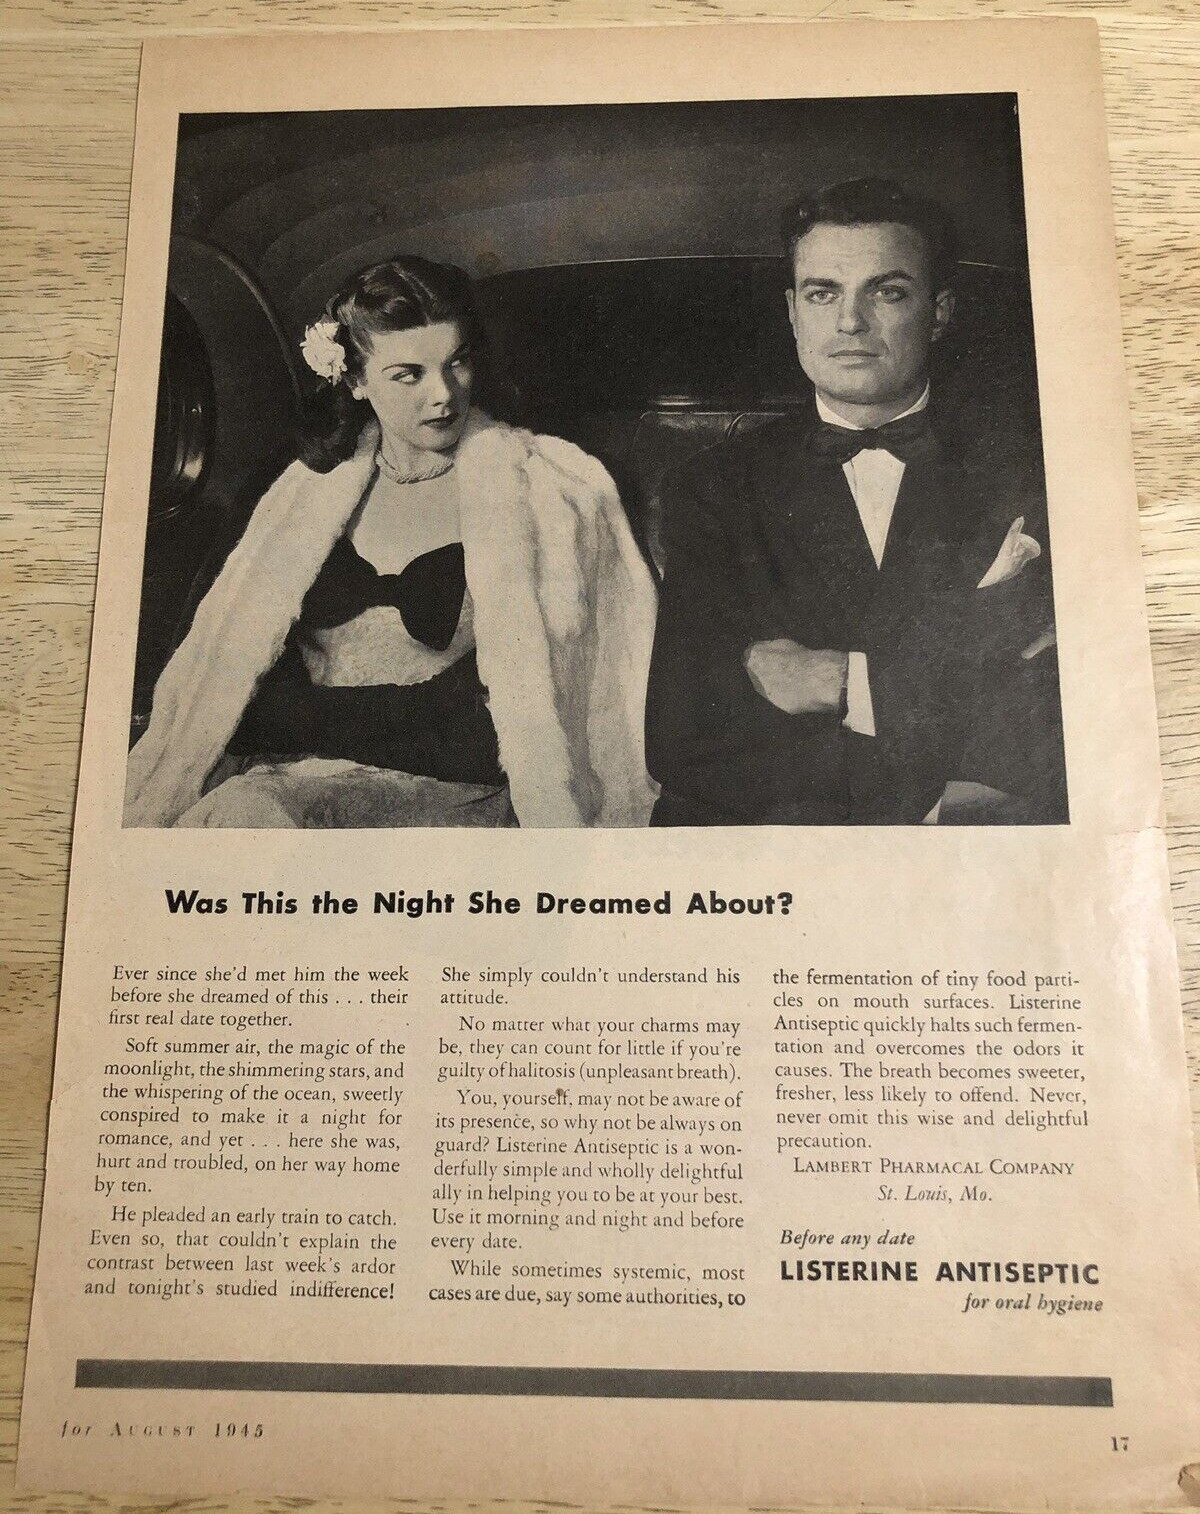 1945 LISTERINE ANTISEPTIC / NOB HILL George Raft - Vintage Magazine Ads 2-sided